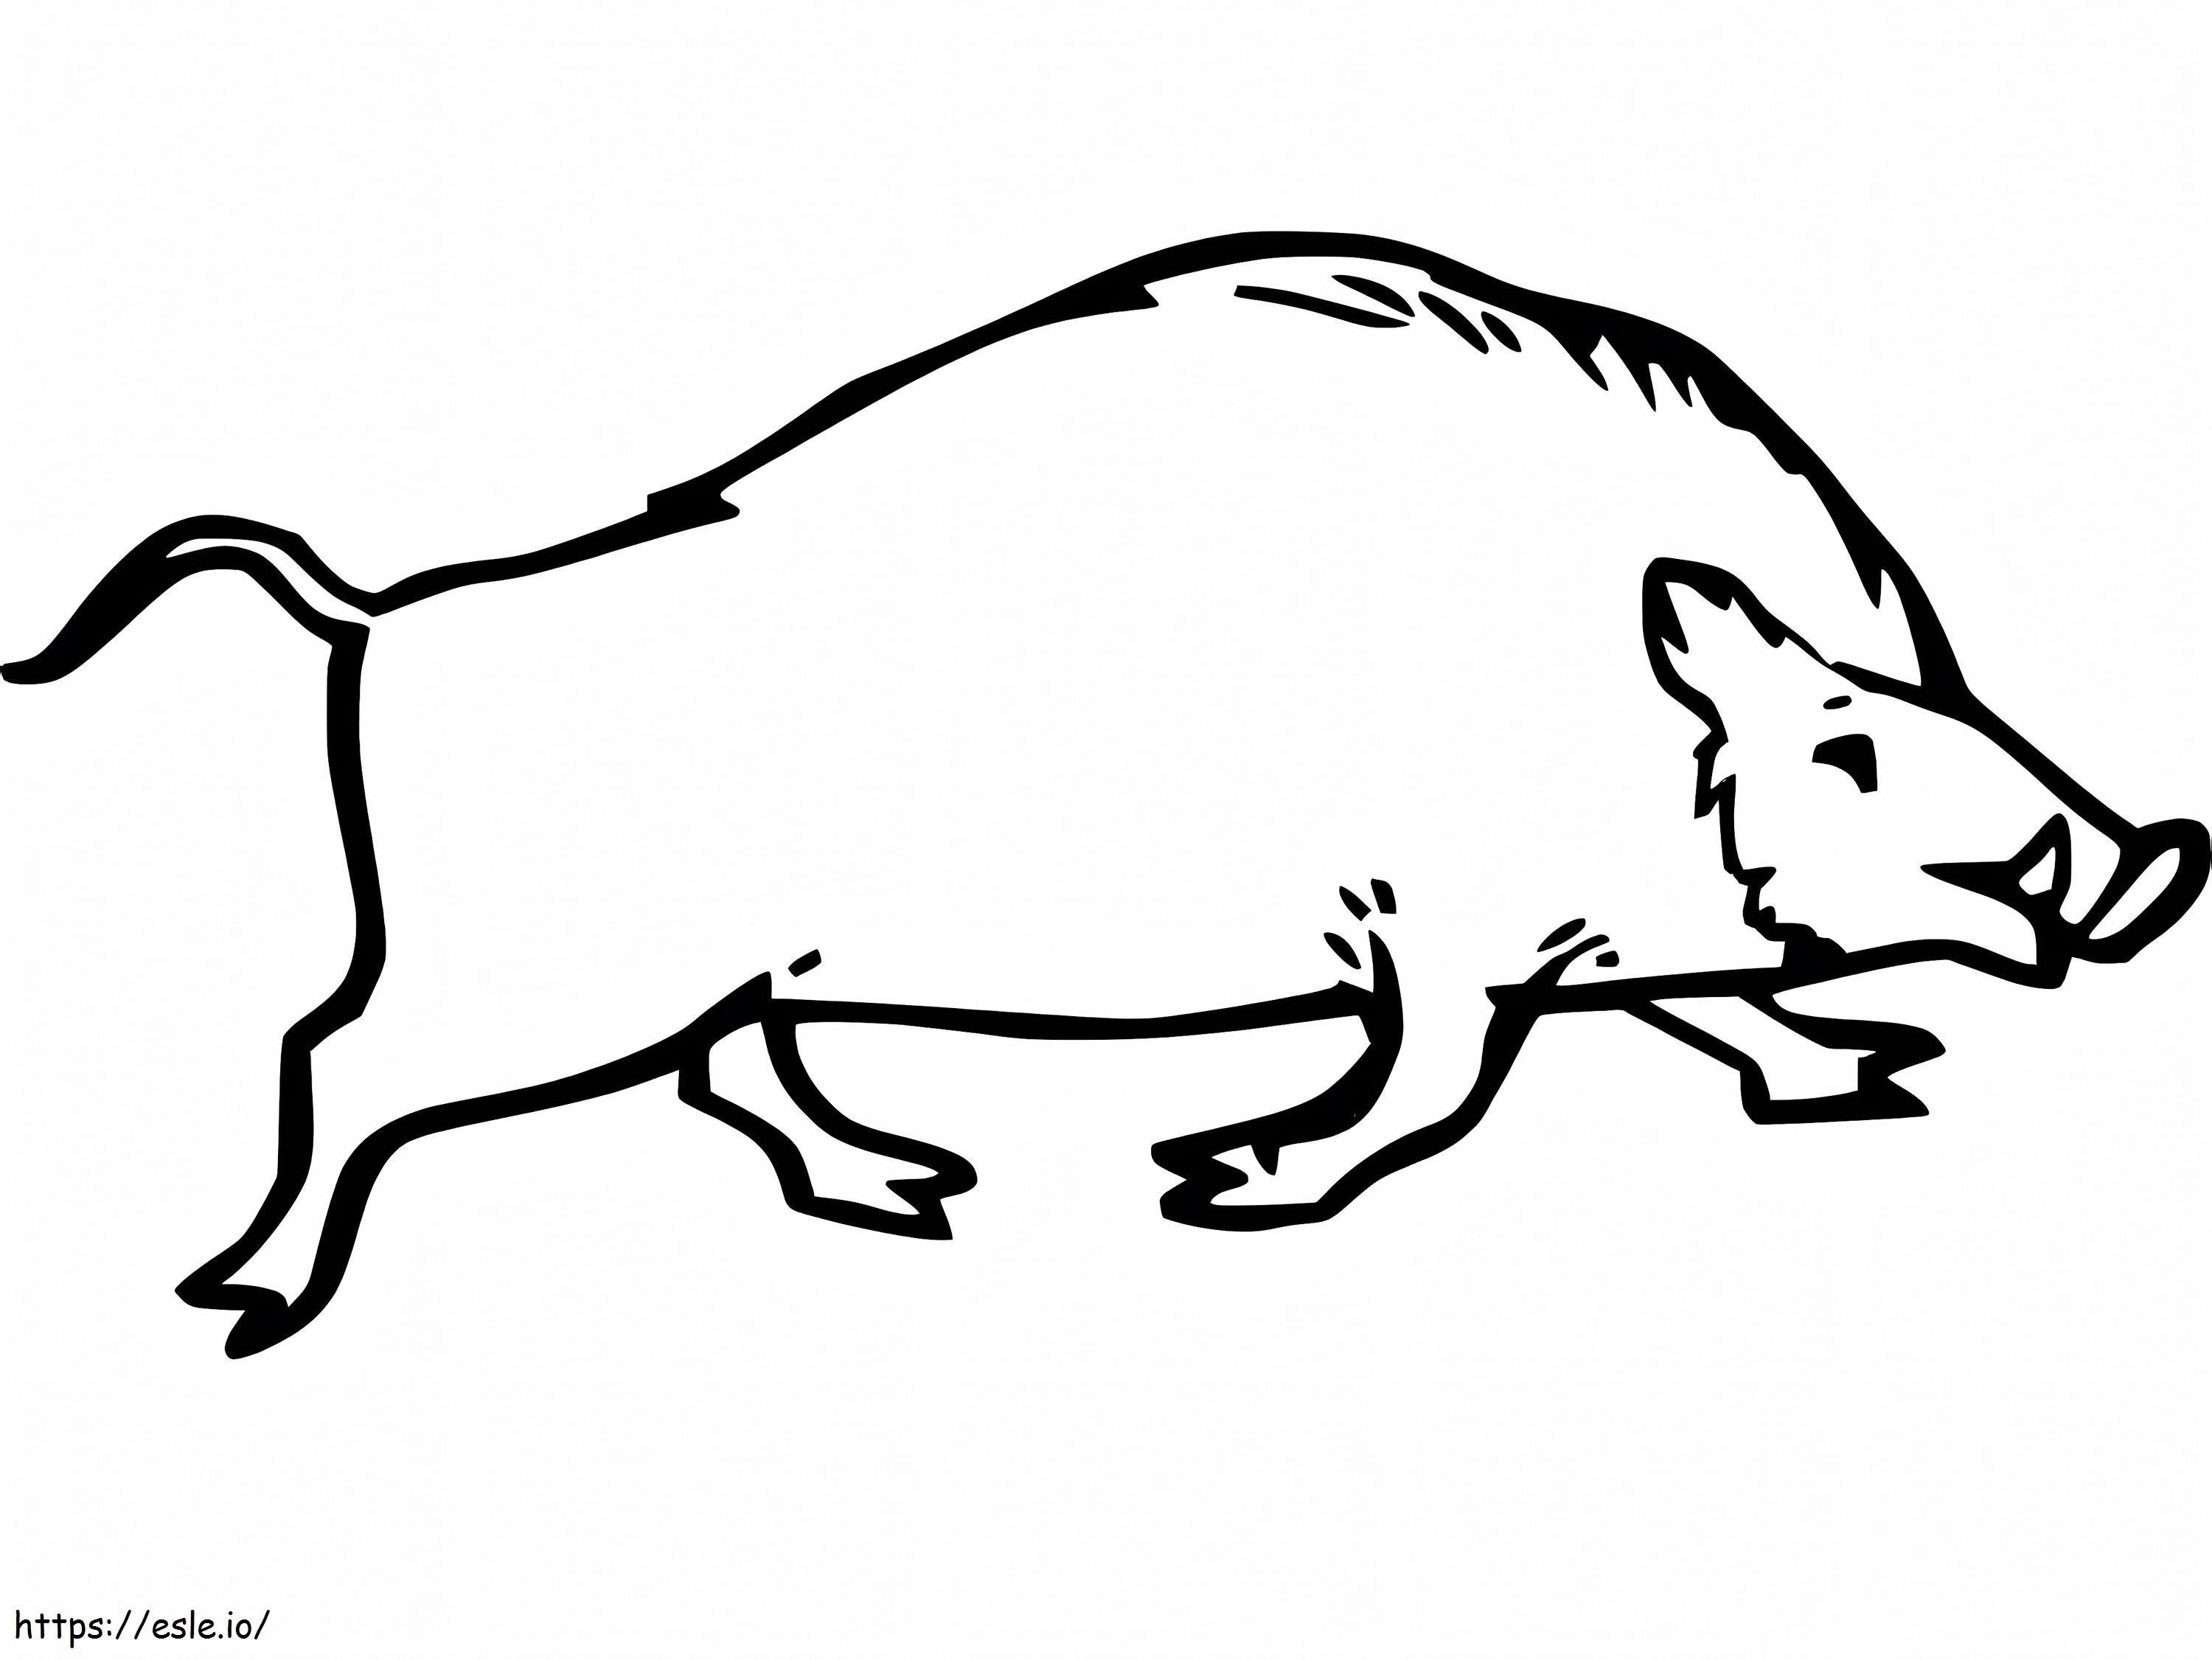 Koşan yaban domuzu çizimi boyama